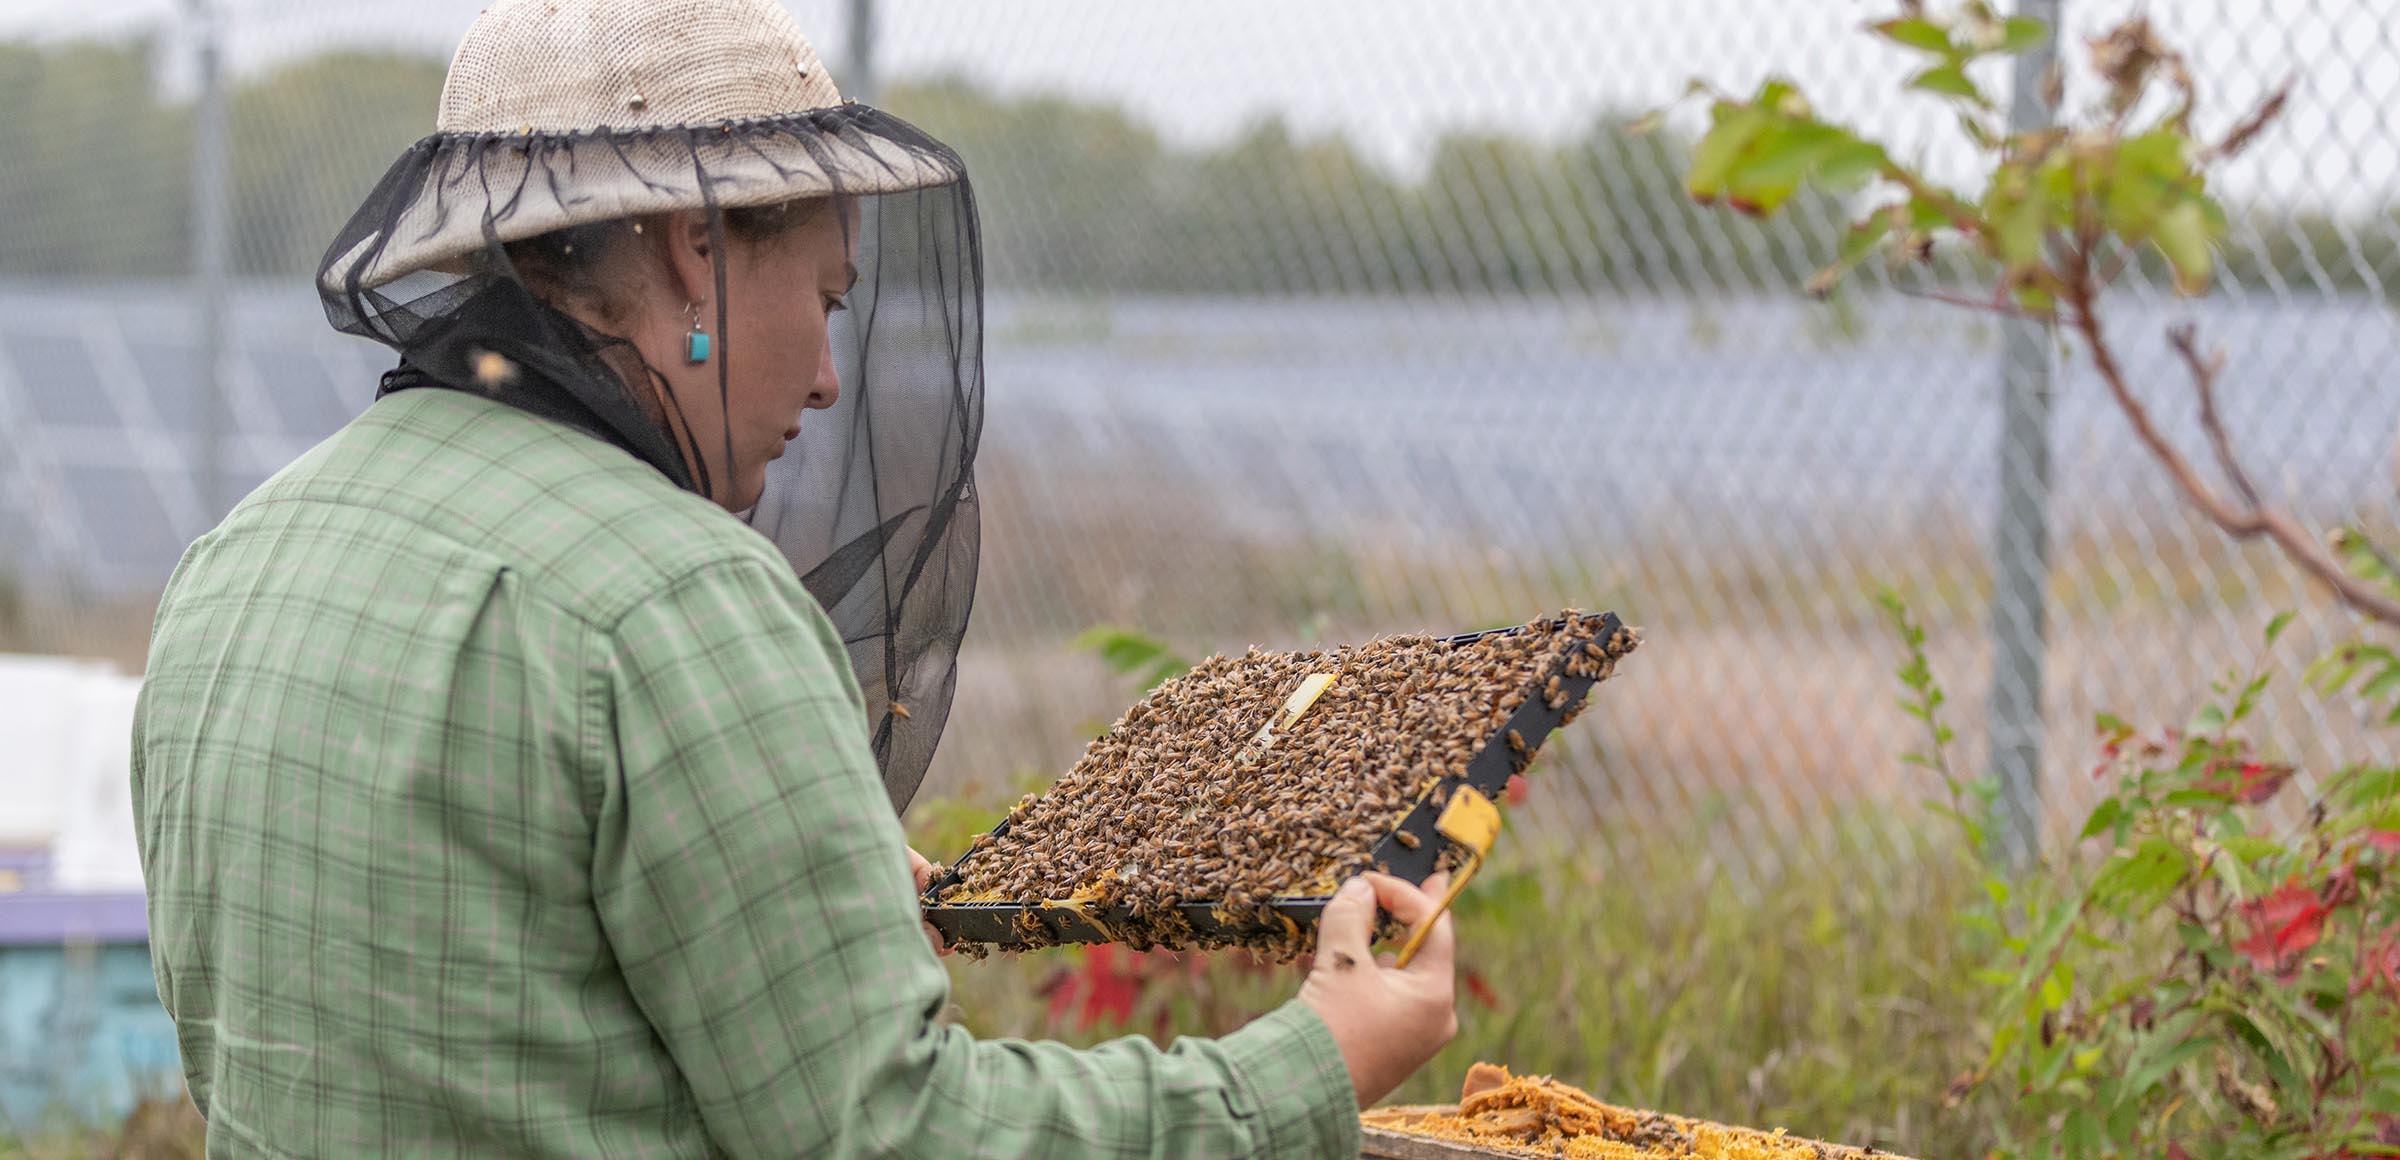 Nossa energia para ajudar as abelhas do mundo inteiro